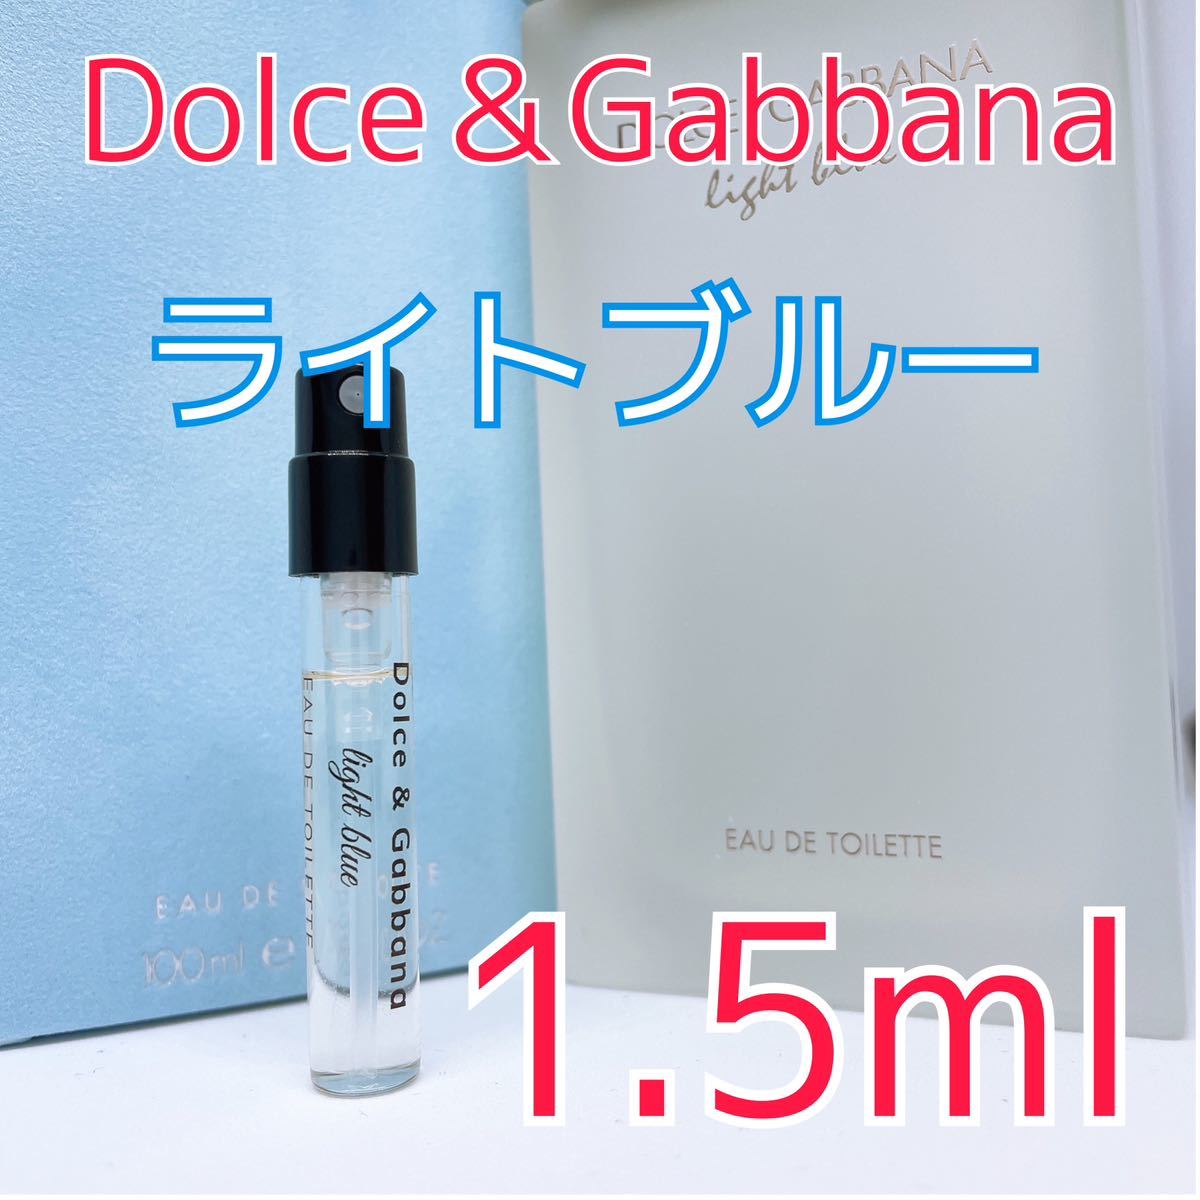  Dolce & Gabbana голубой o-doto трещина духи 1.5ml Dolce&Gabbana 